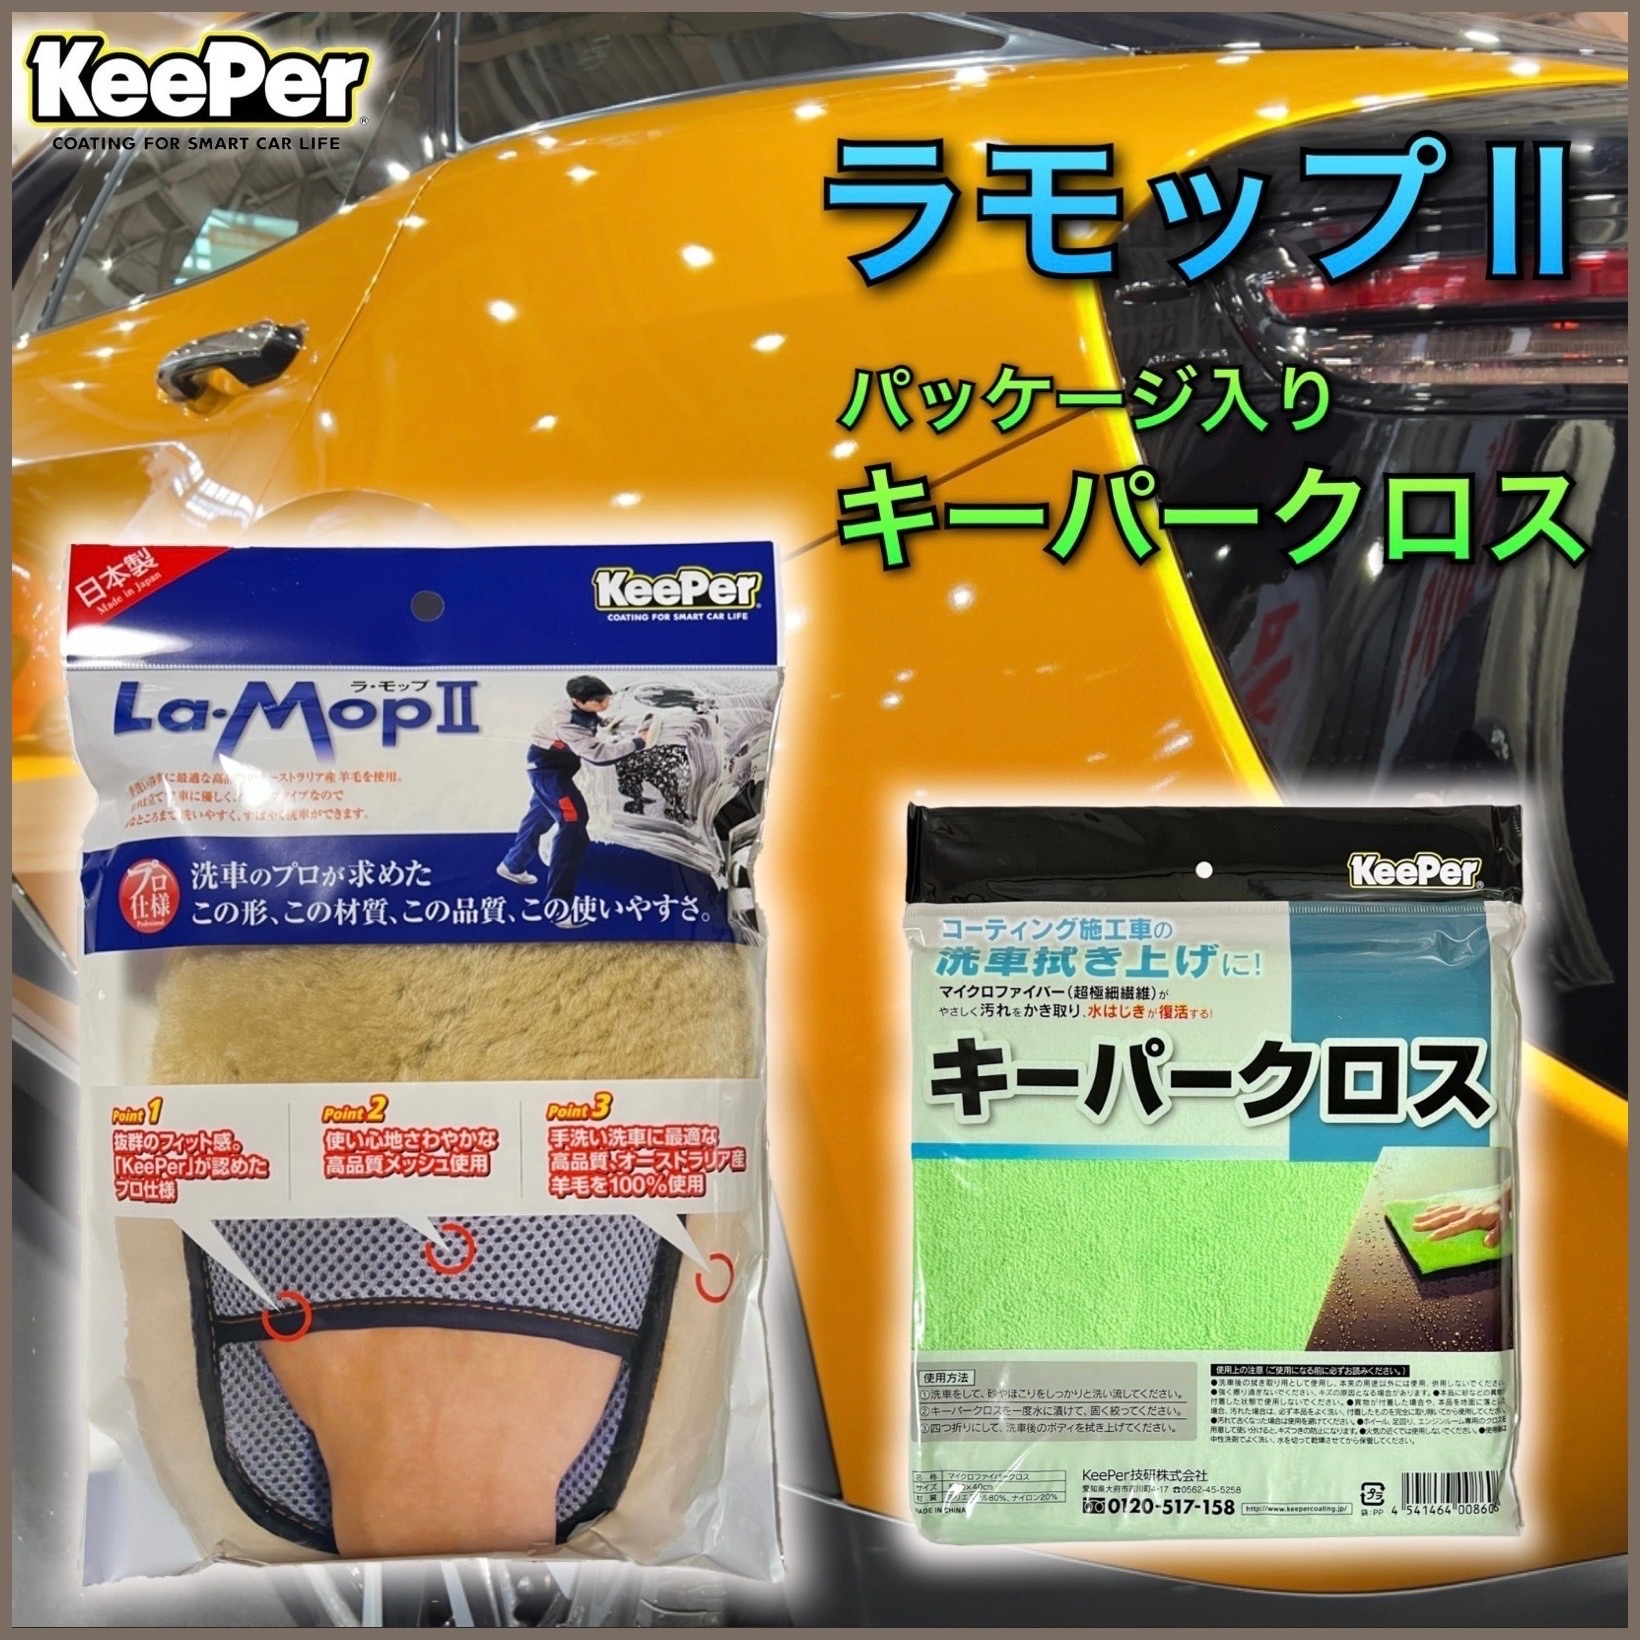 ラモップⅡ セット売り KeePer